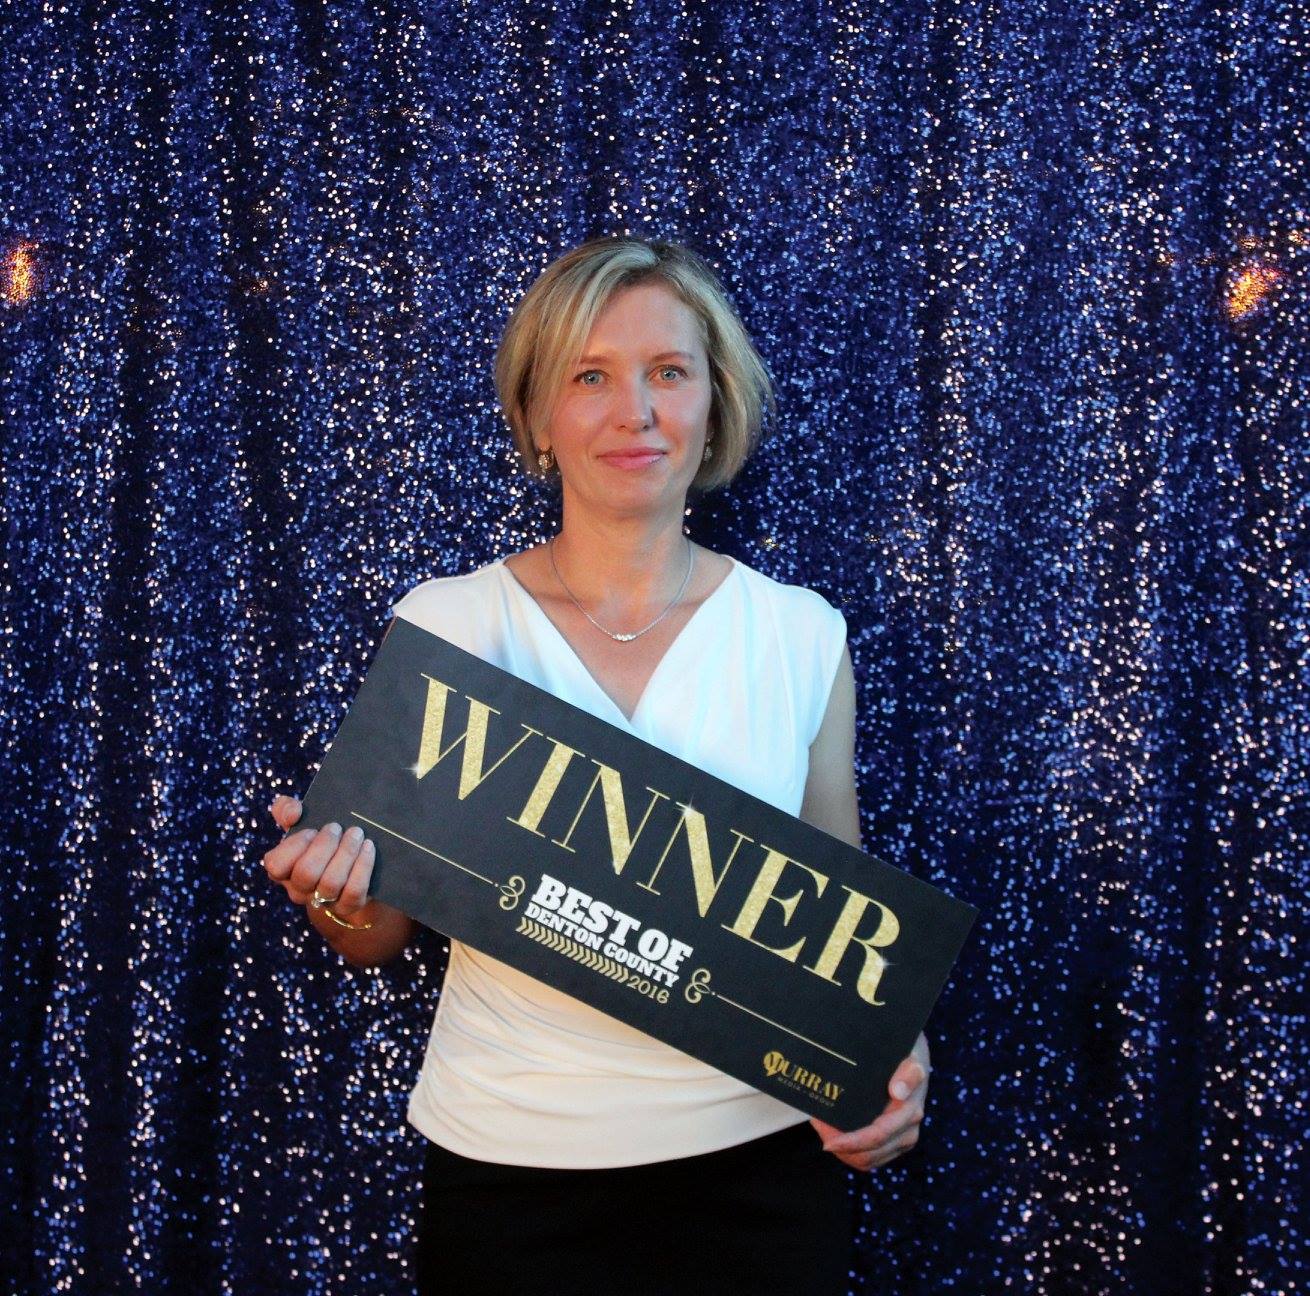 bounce house rental winner lena owner best of denton county award